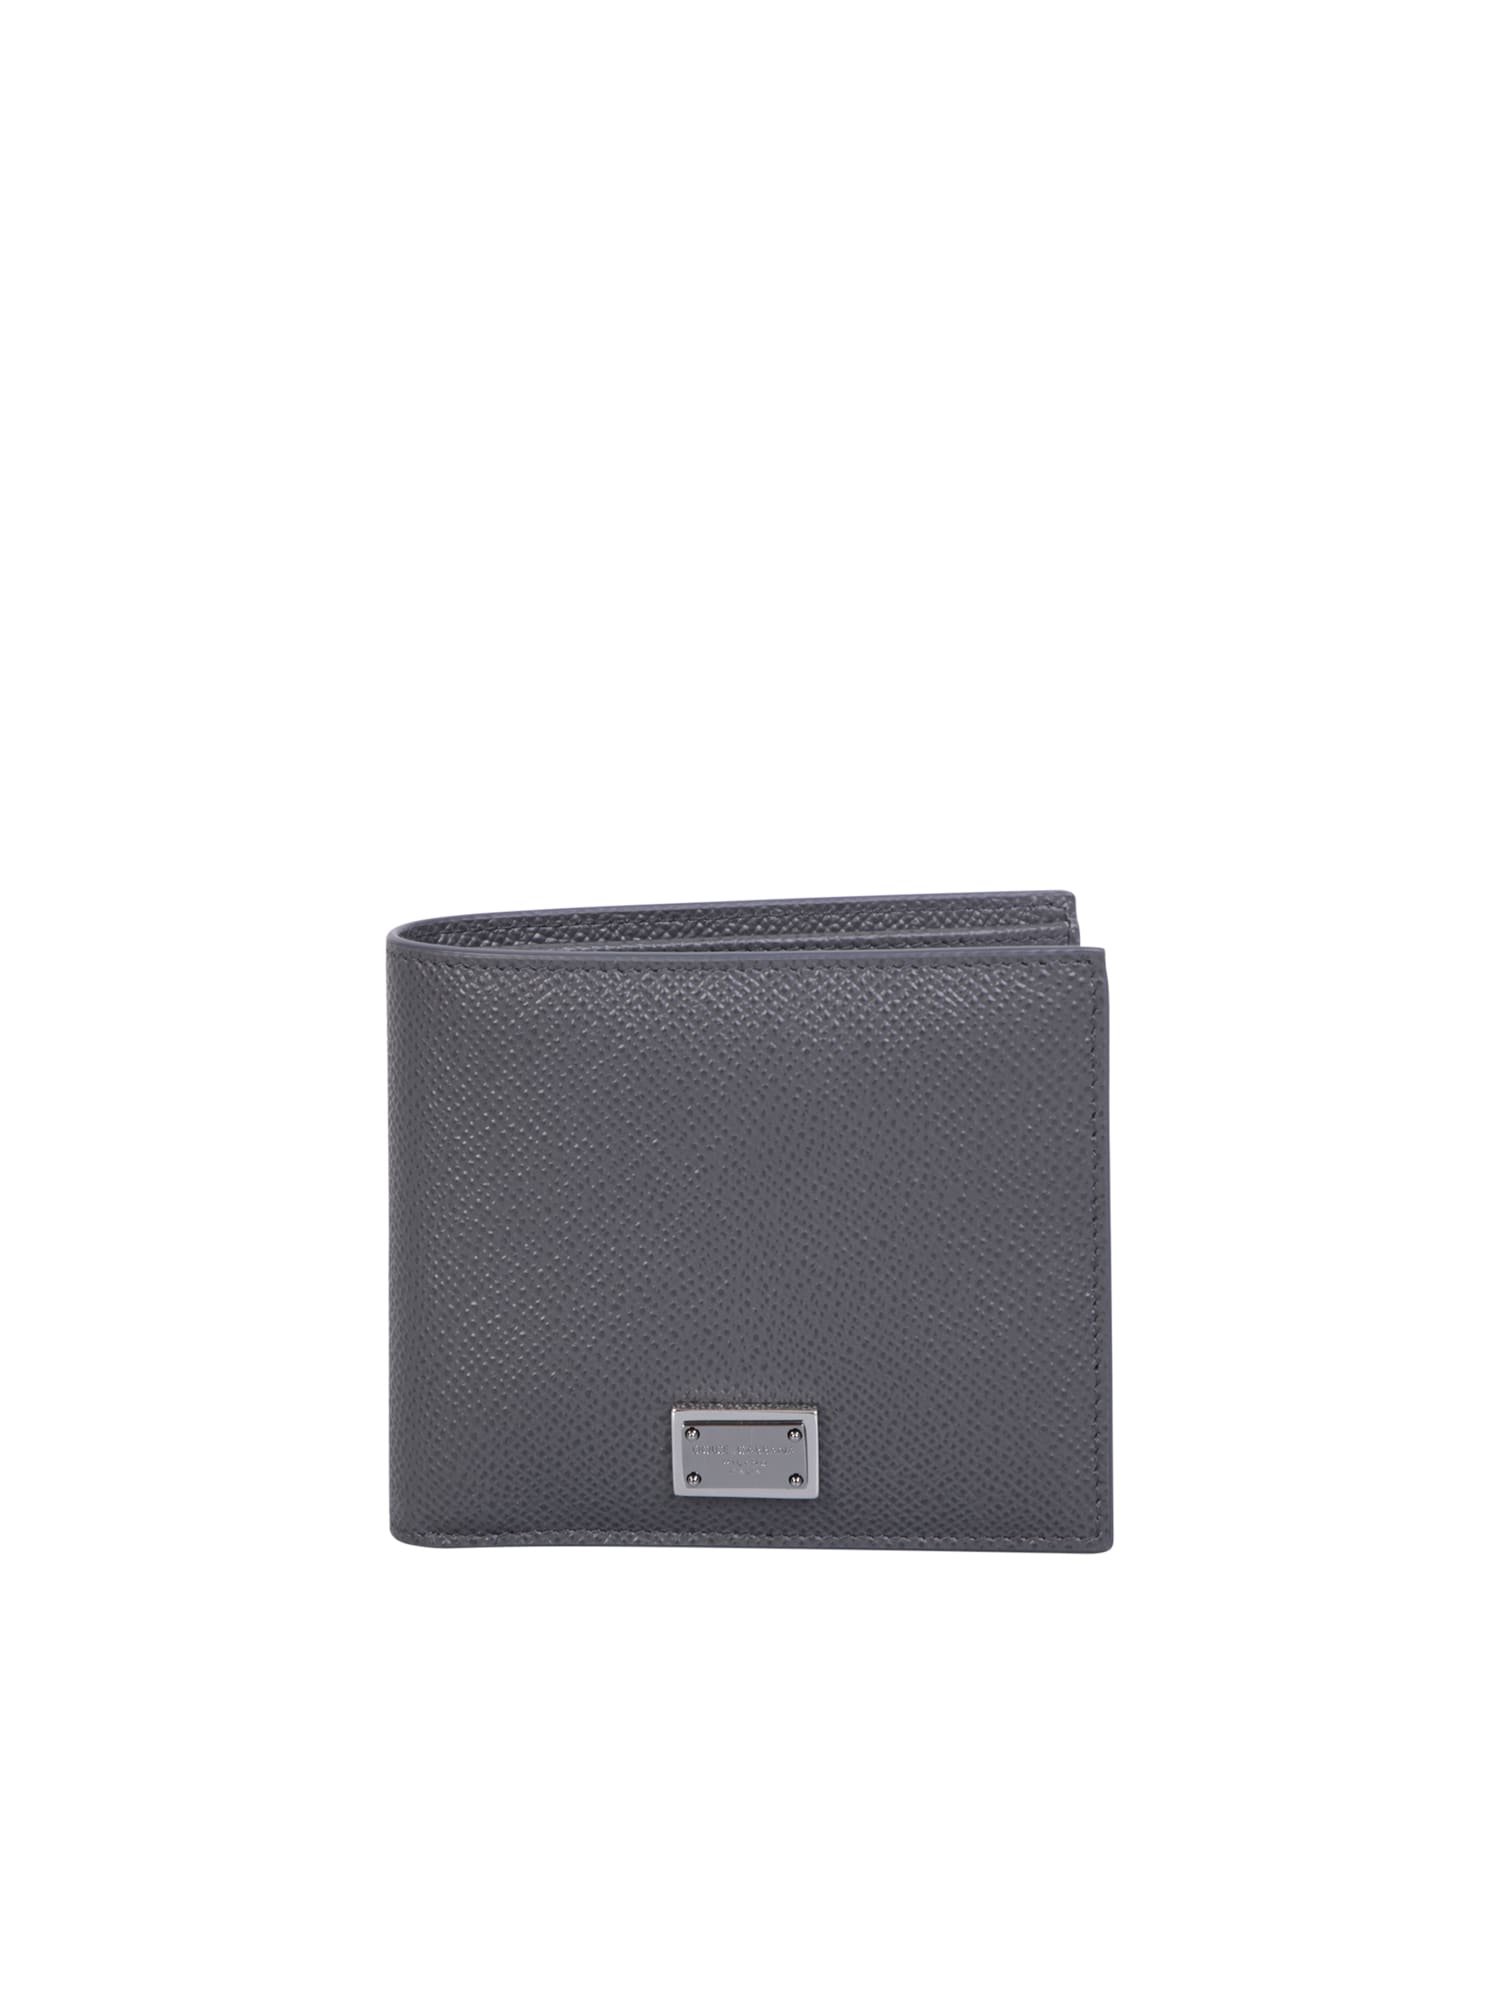 Dolce & Gabbana Grey Bi-fold Wallet